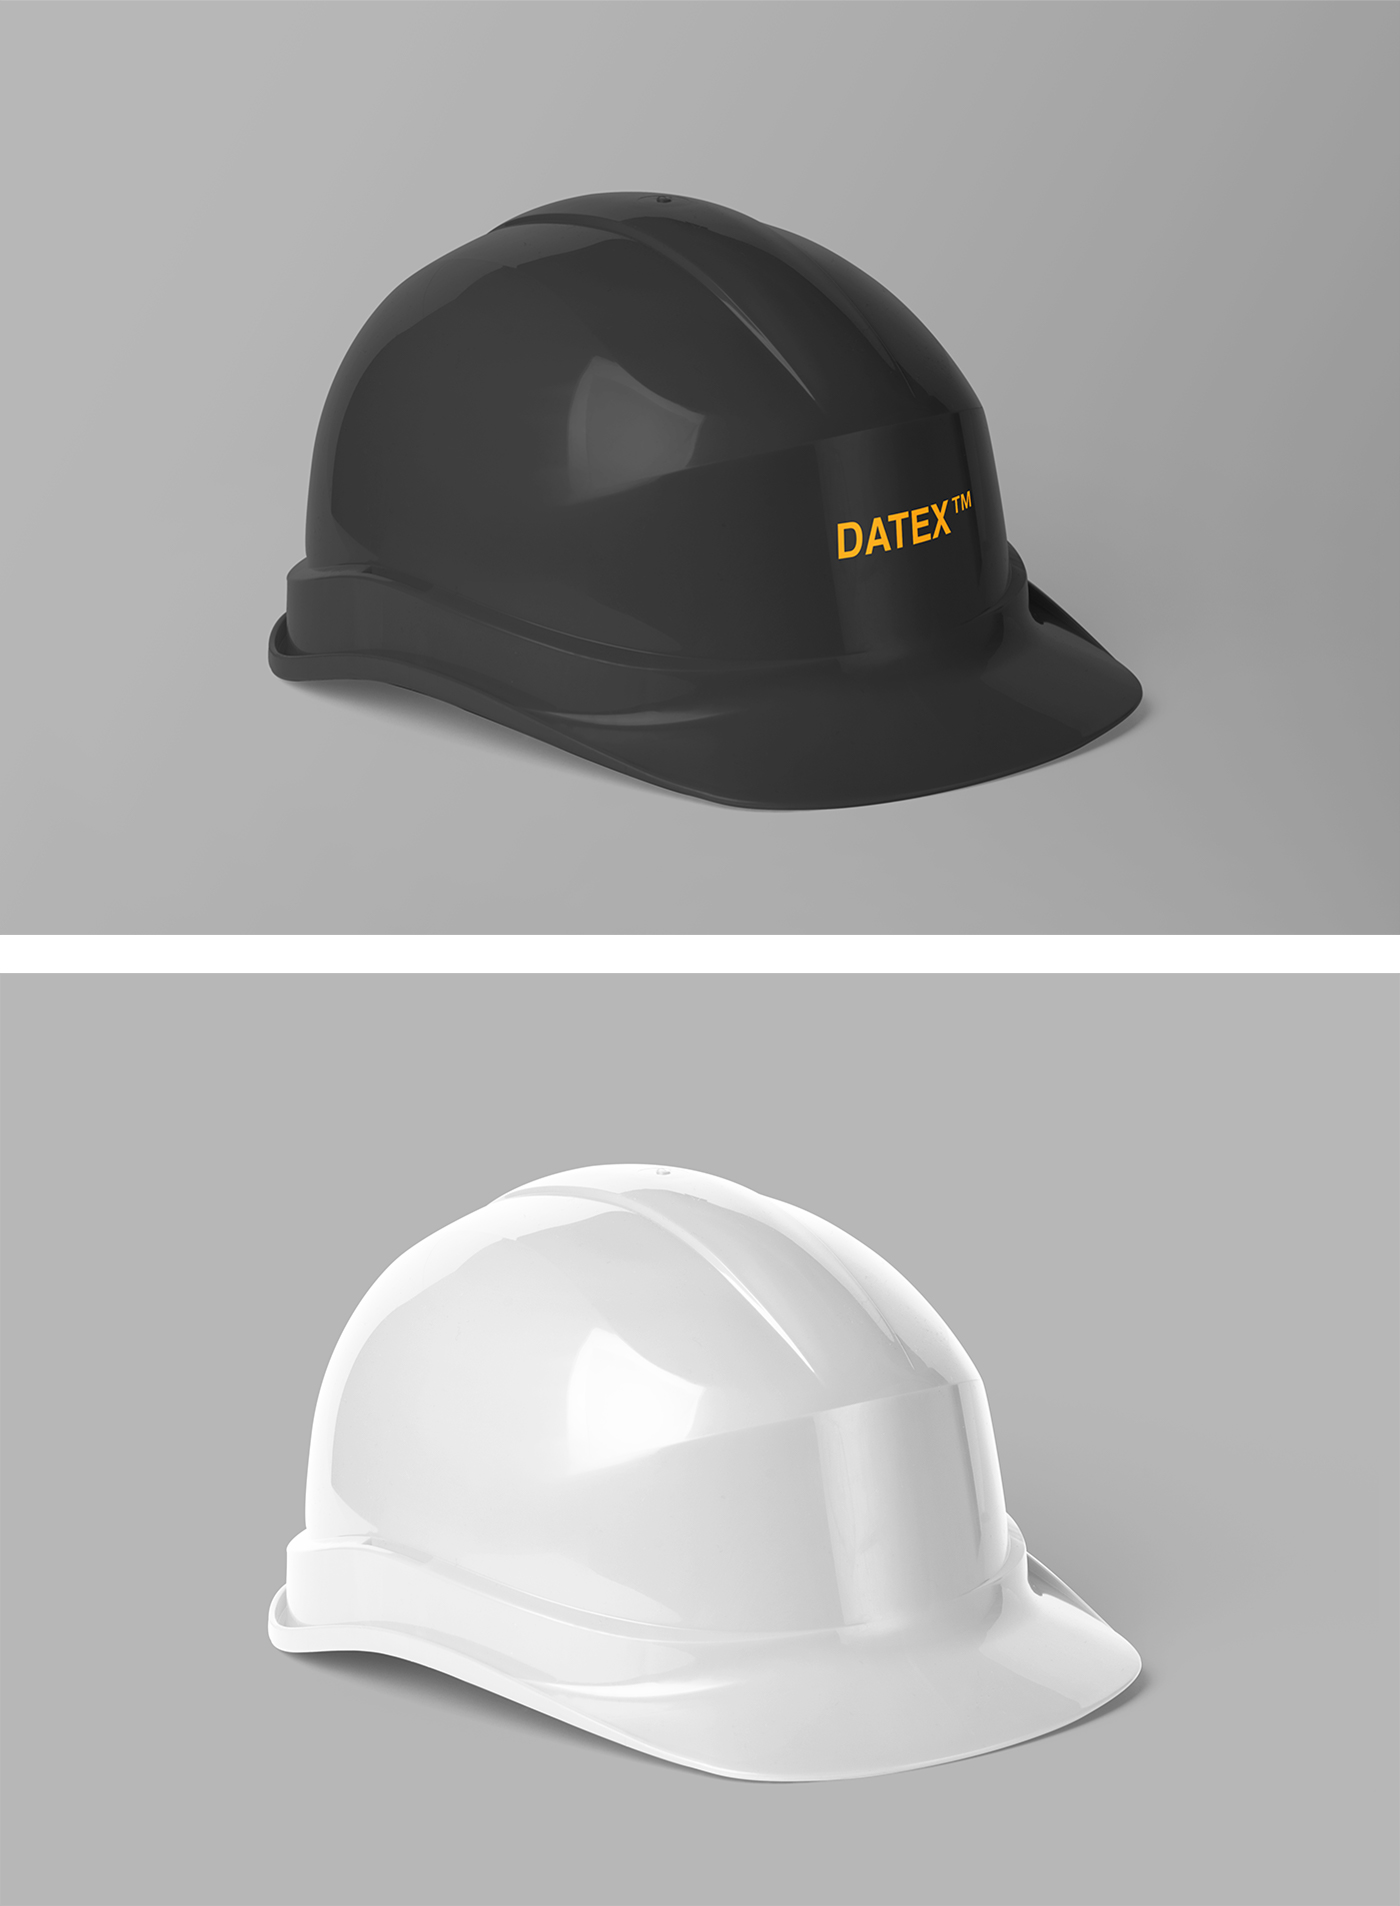 Download Construction Helmet Mockup — Mr.Mockup | Graphic Design ...